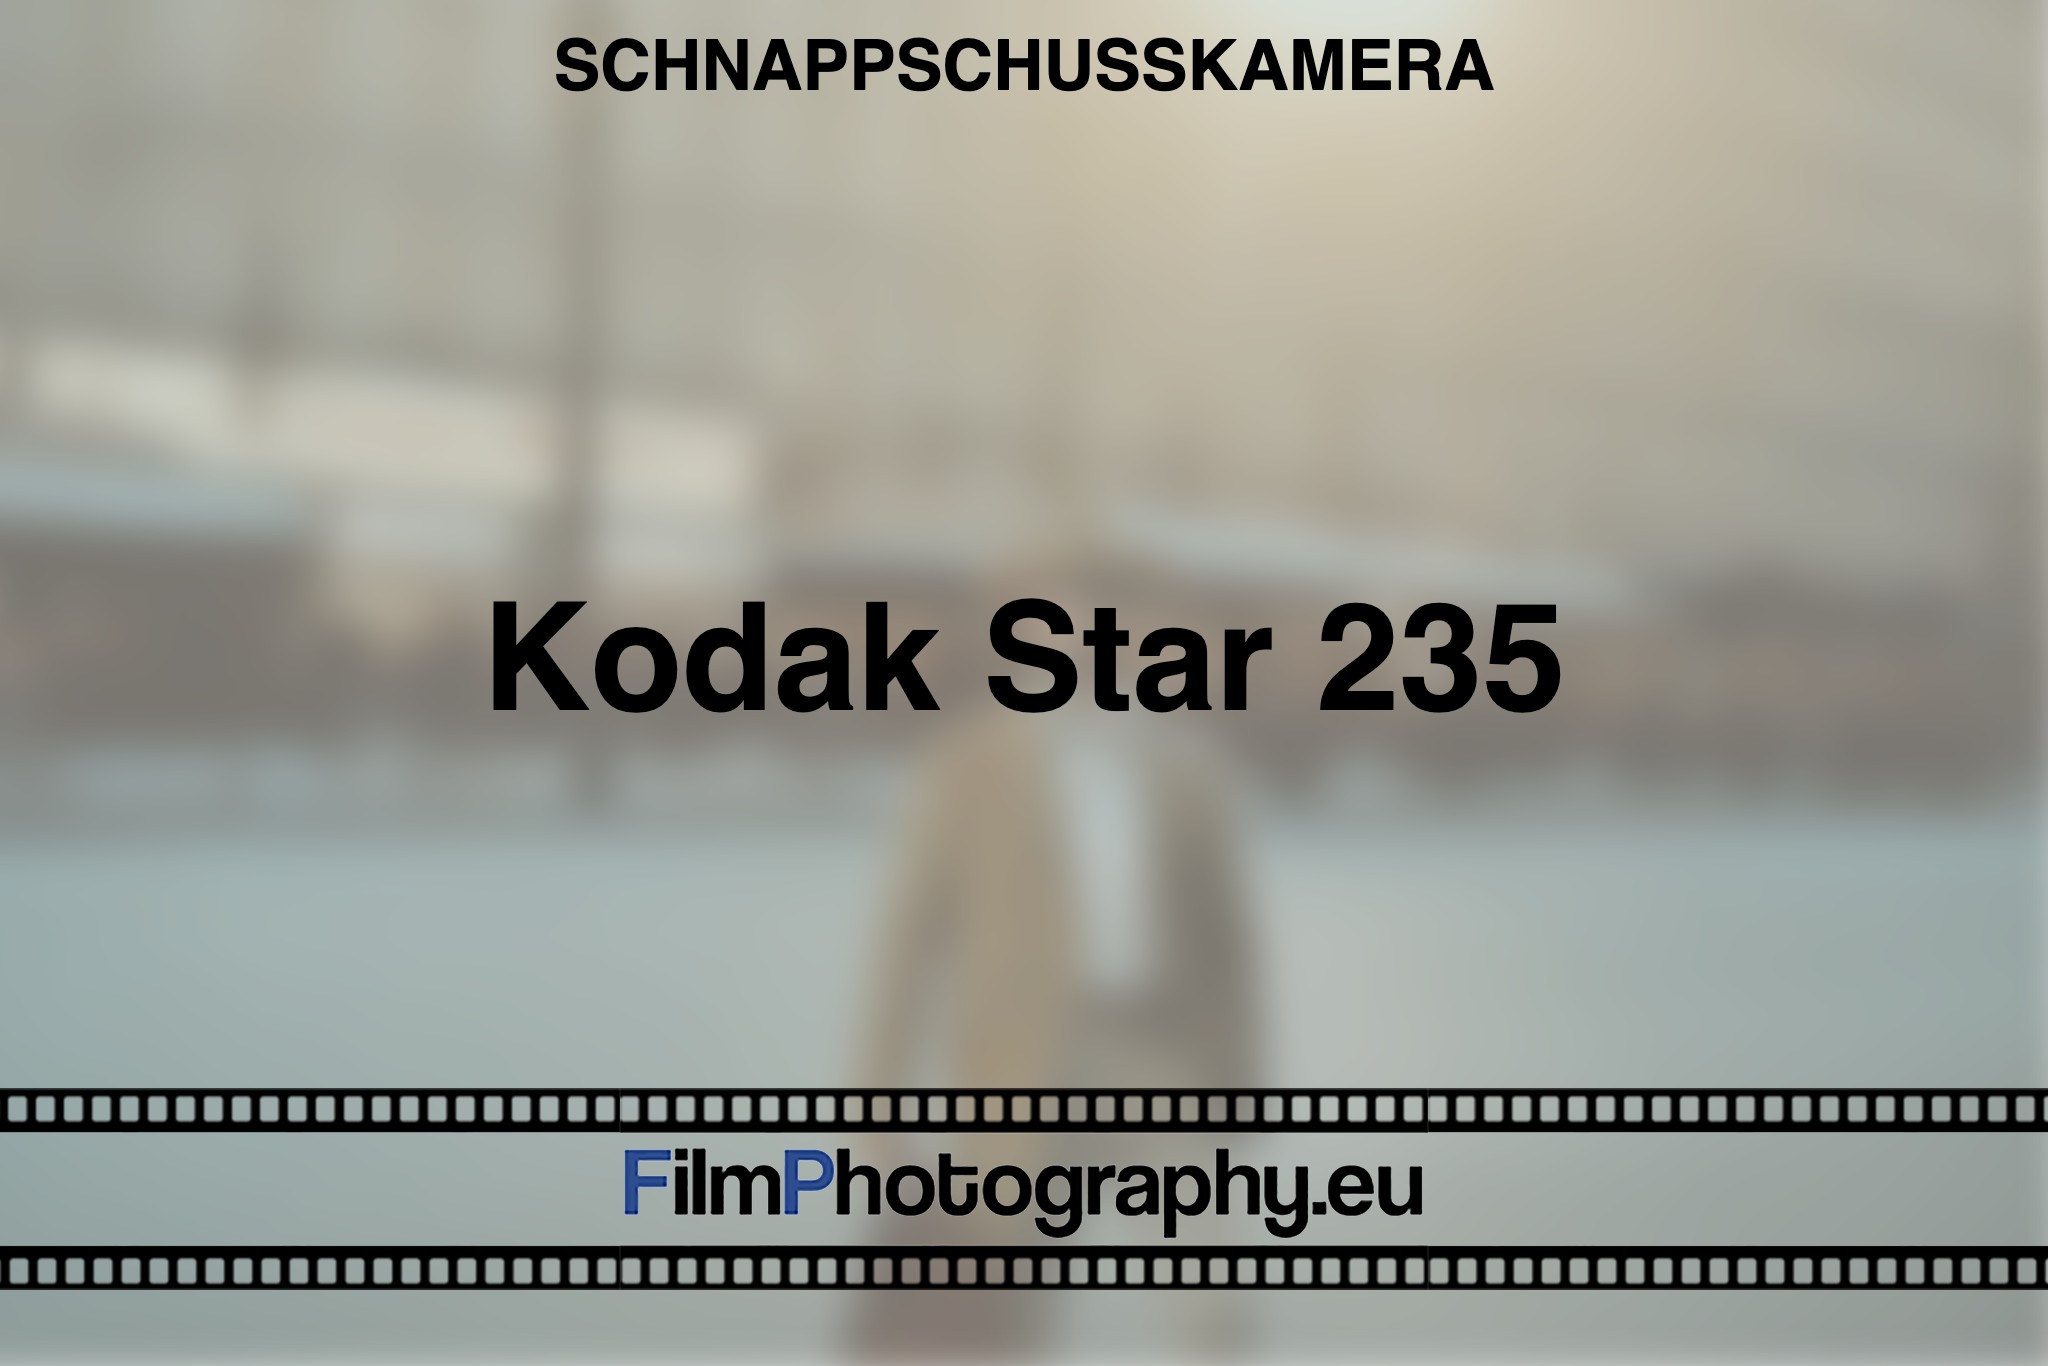 kodak-star-235-schnappschusskamera-bnv